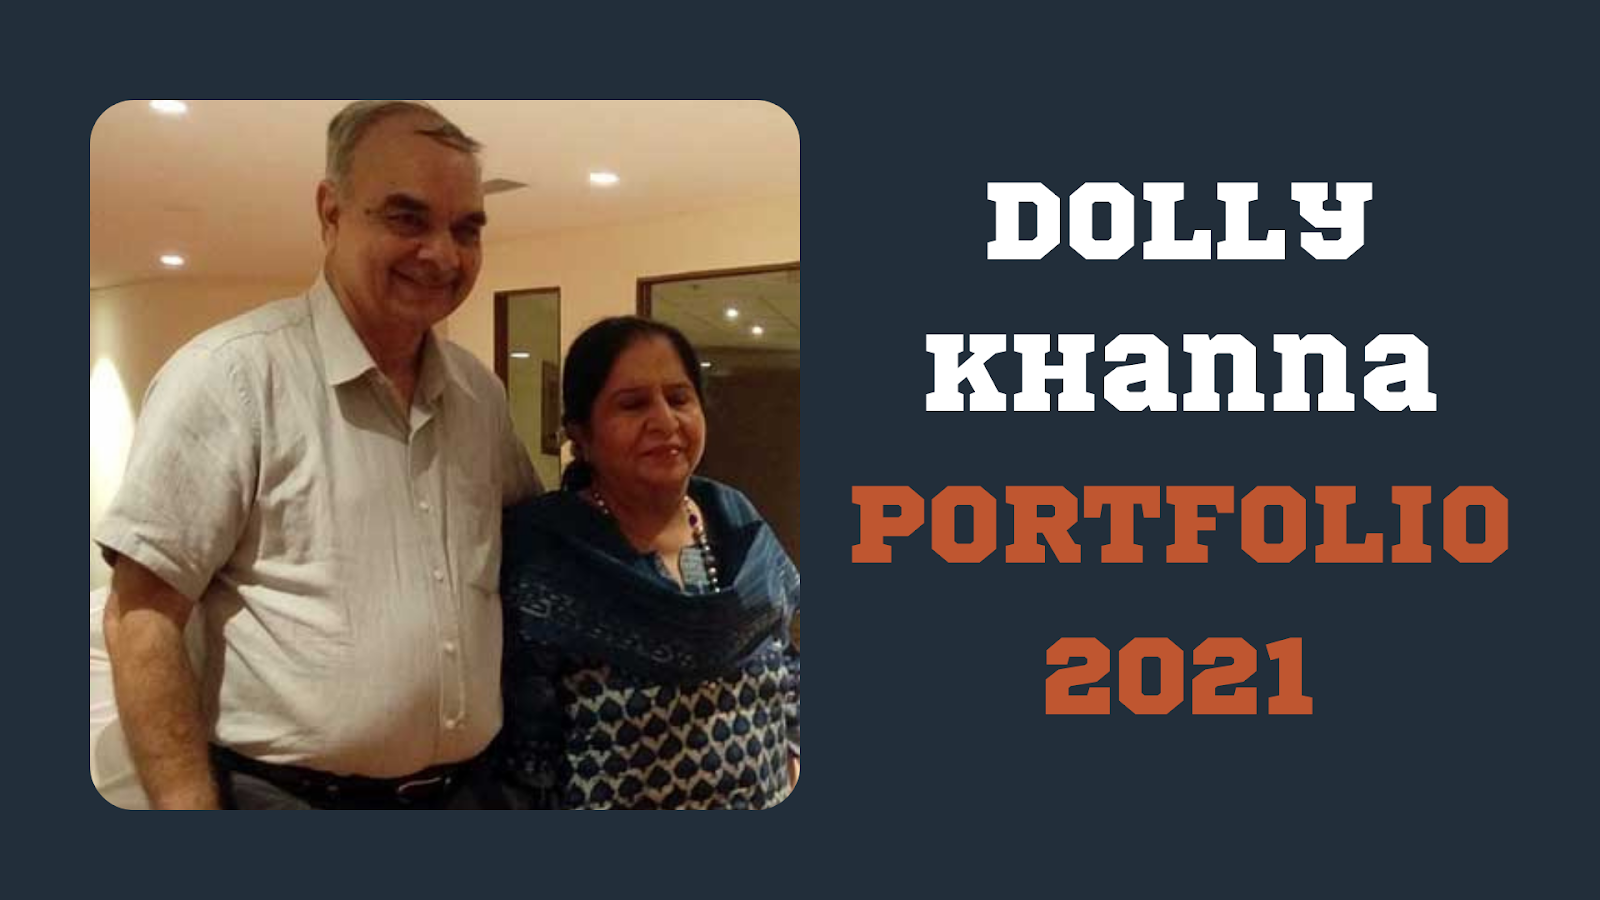 Dolly Khanna Portfolio - latest